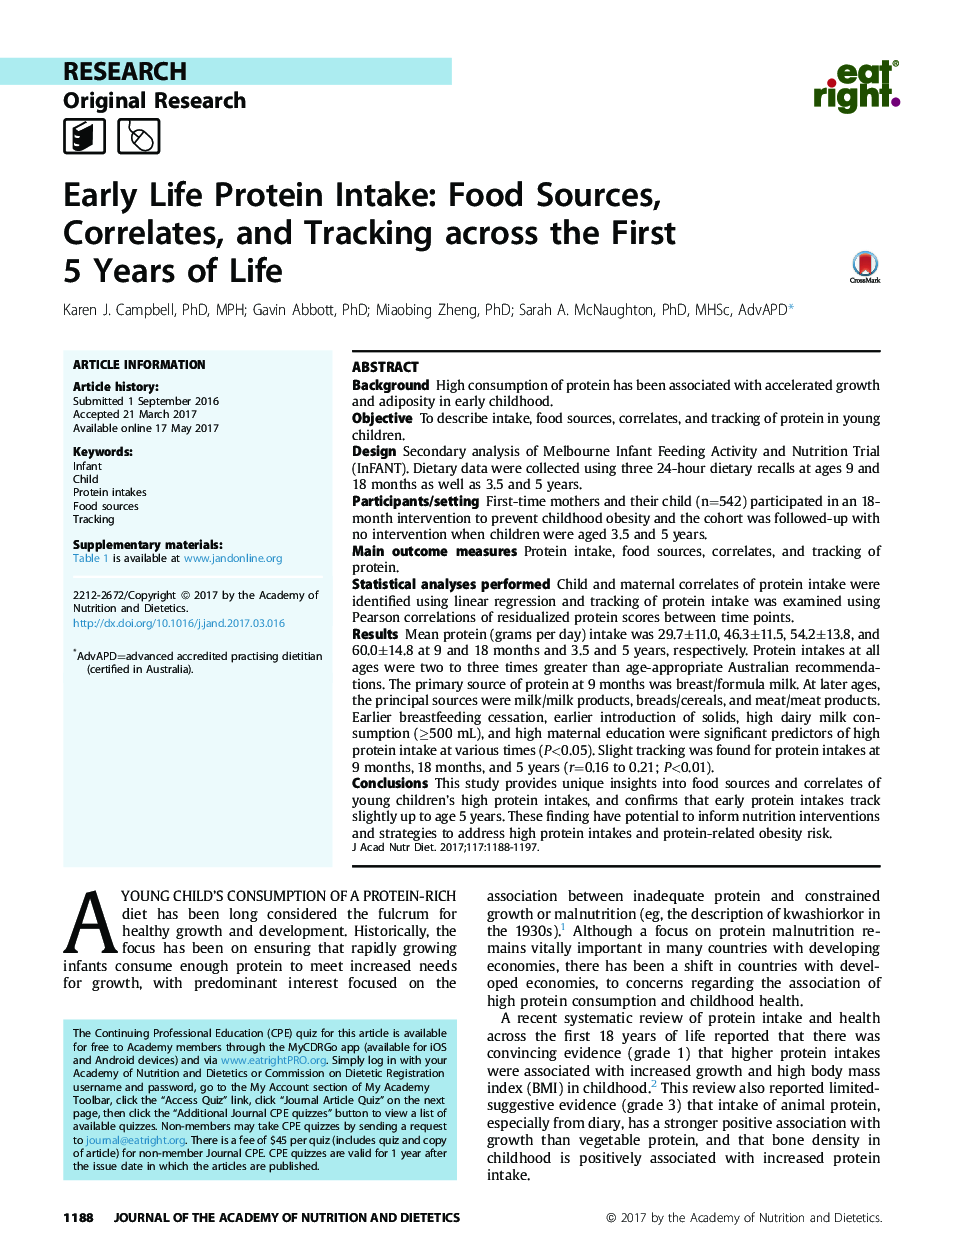 مصرف پروتئین زودرس: منابع غذایی، همبستگی و پیگیری در طول 5 سال اول زندگی 